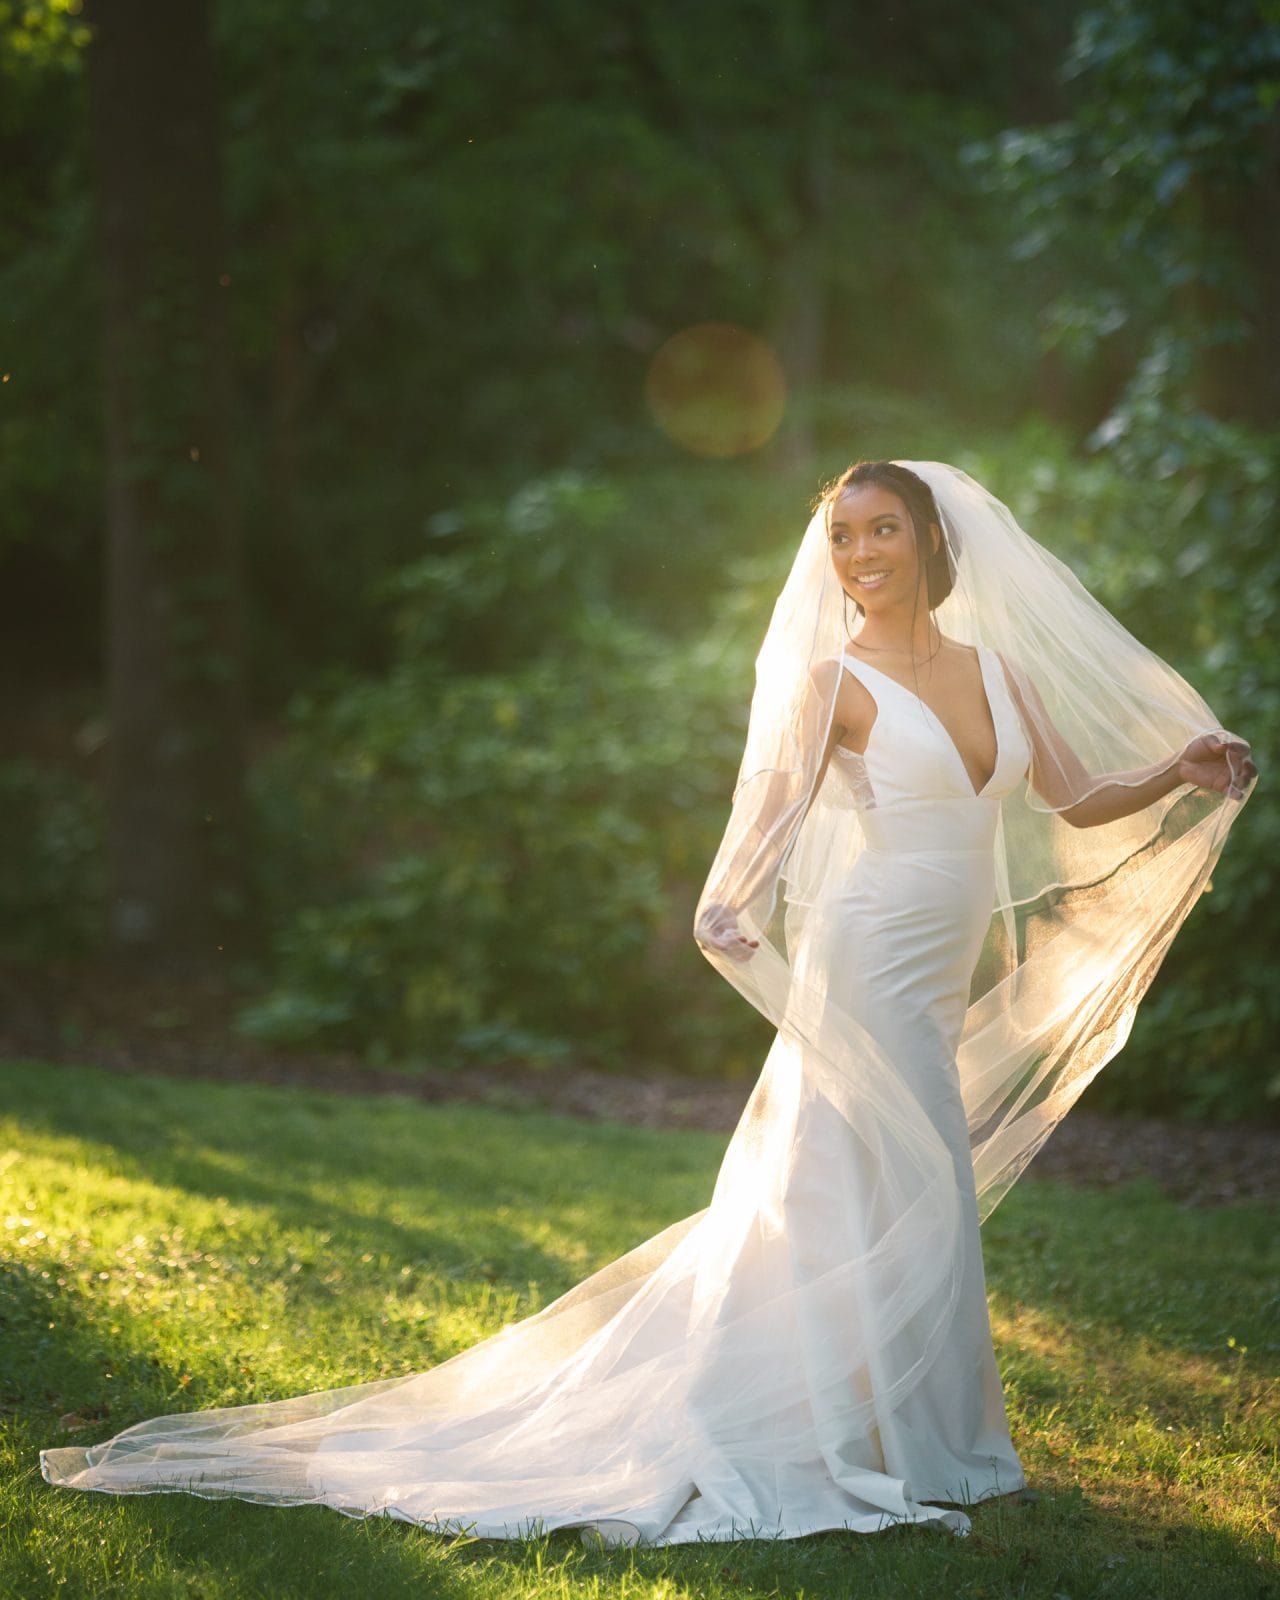 umstead weddings - kayla's bridal session